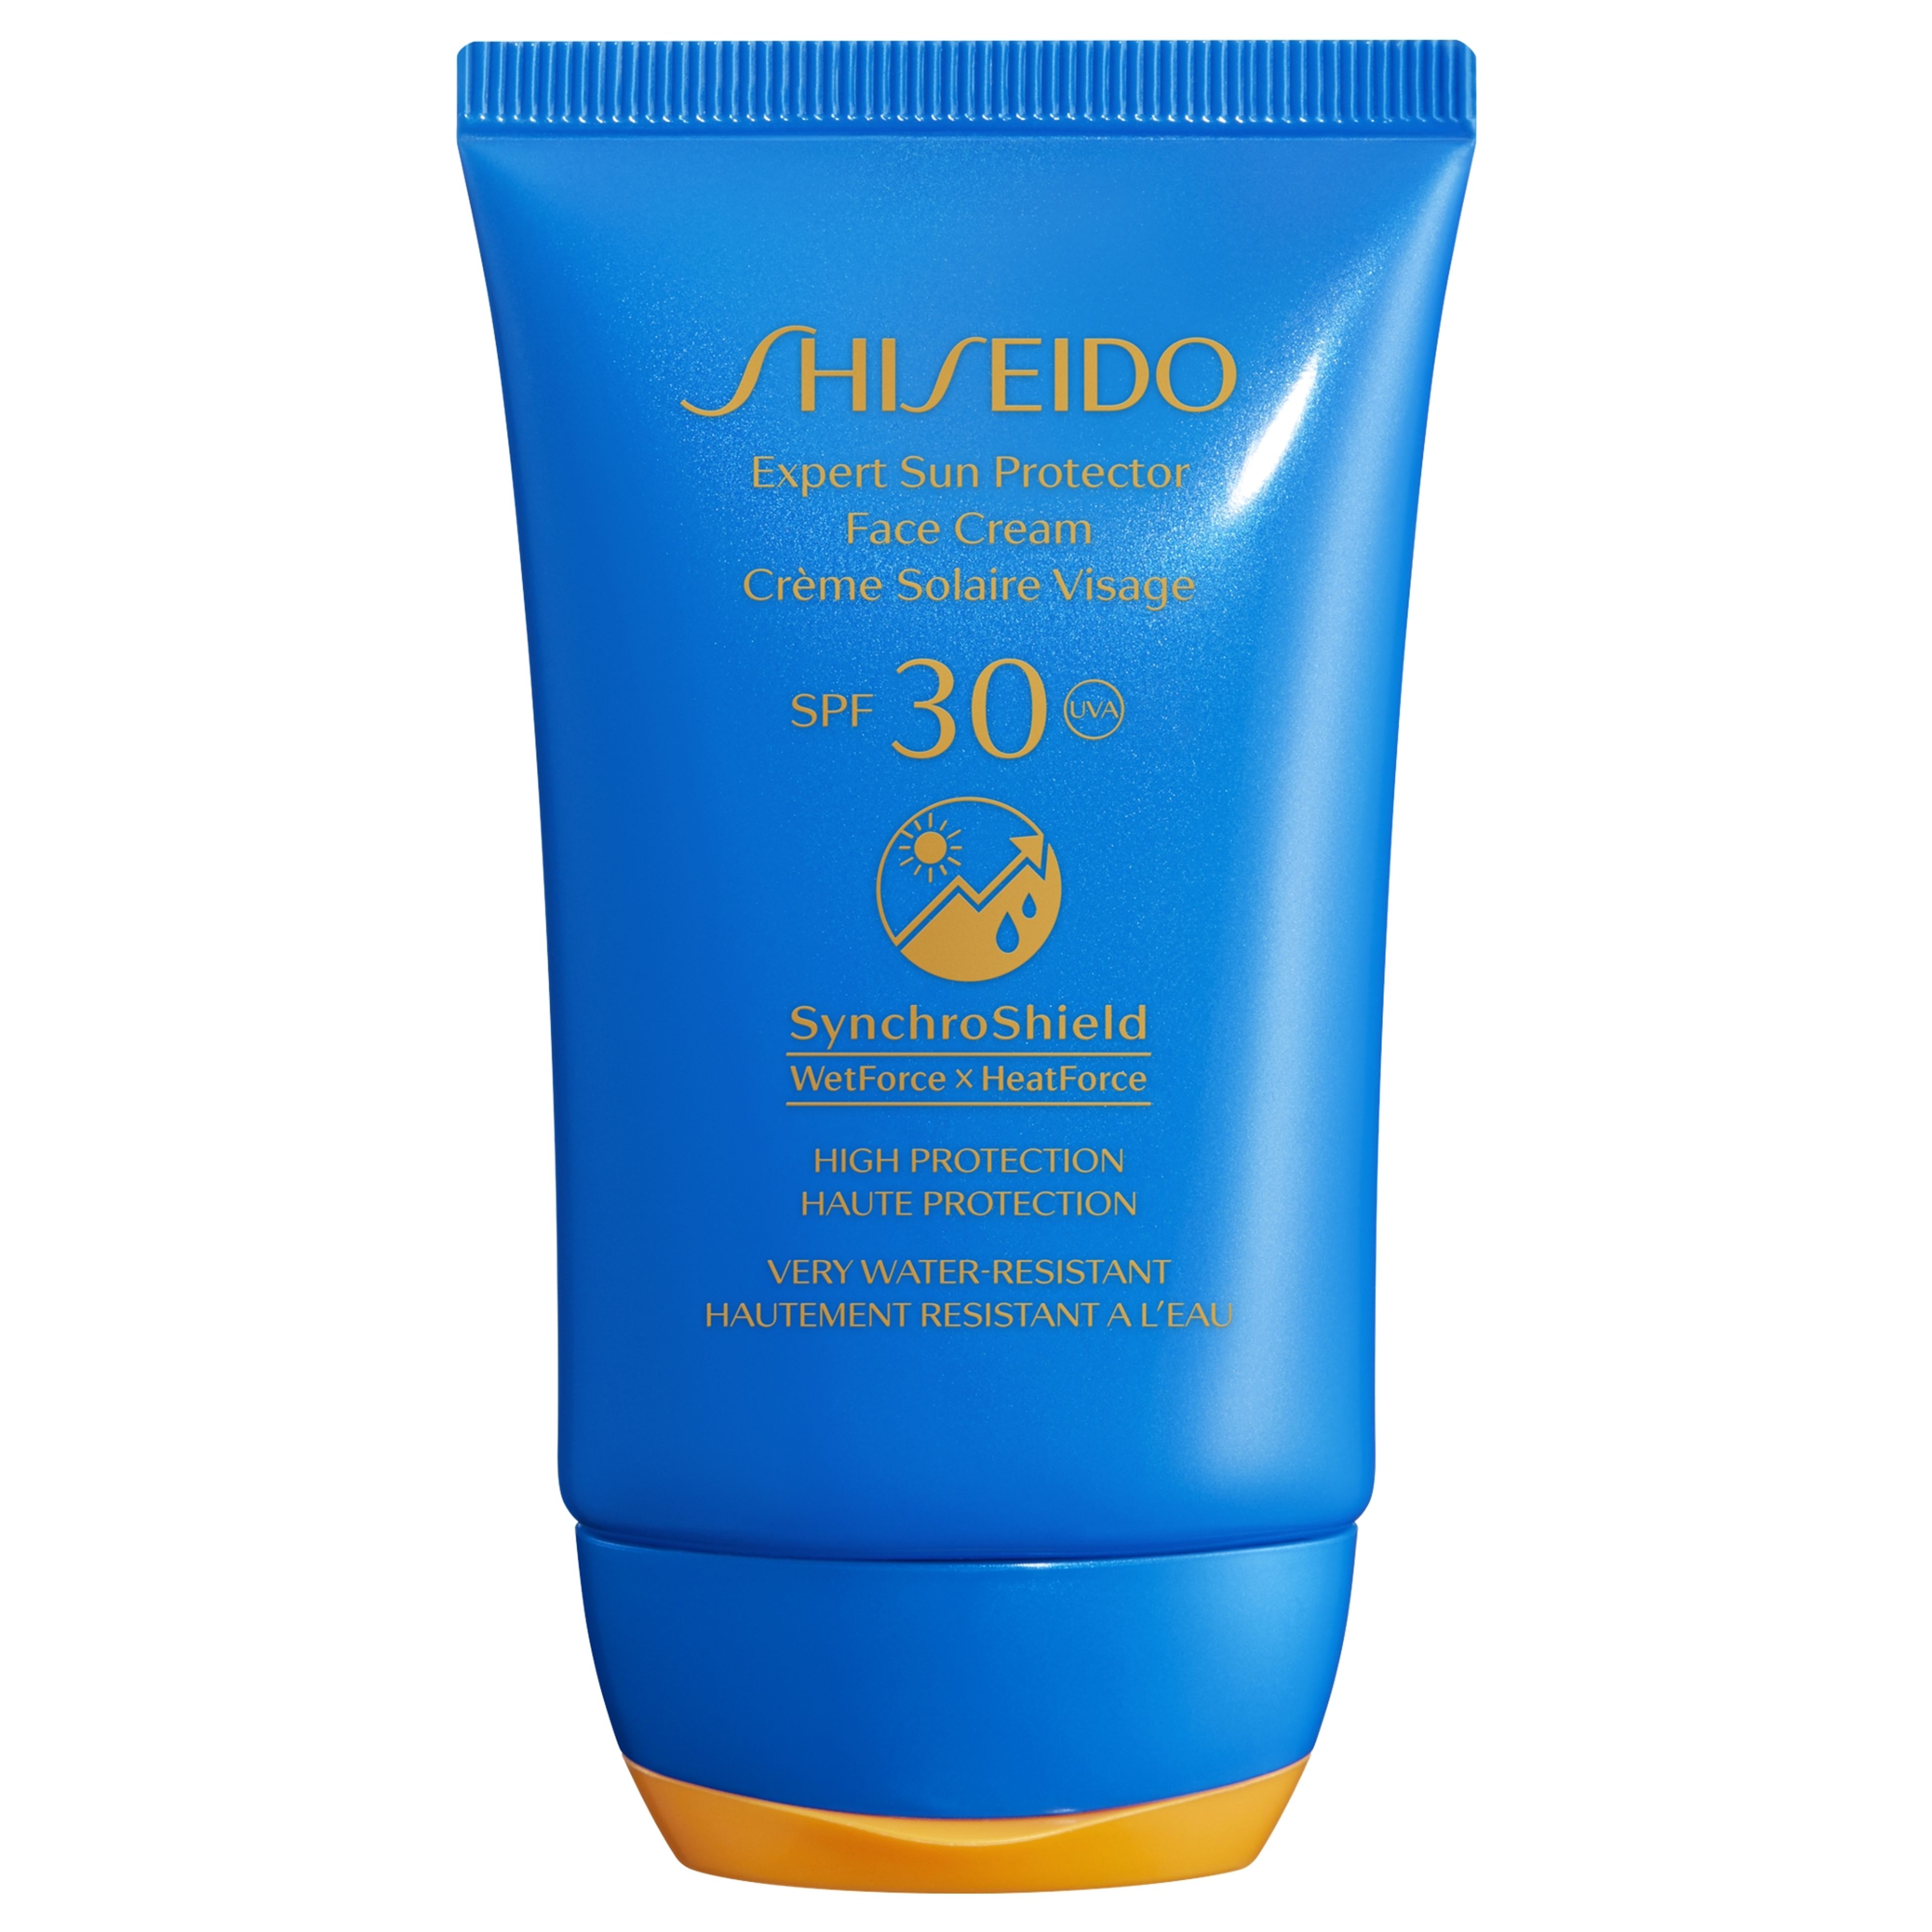 Shiseido Expert Sun Protector
face Cream 
spf30 1